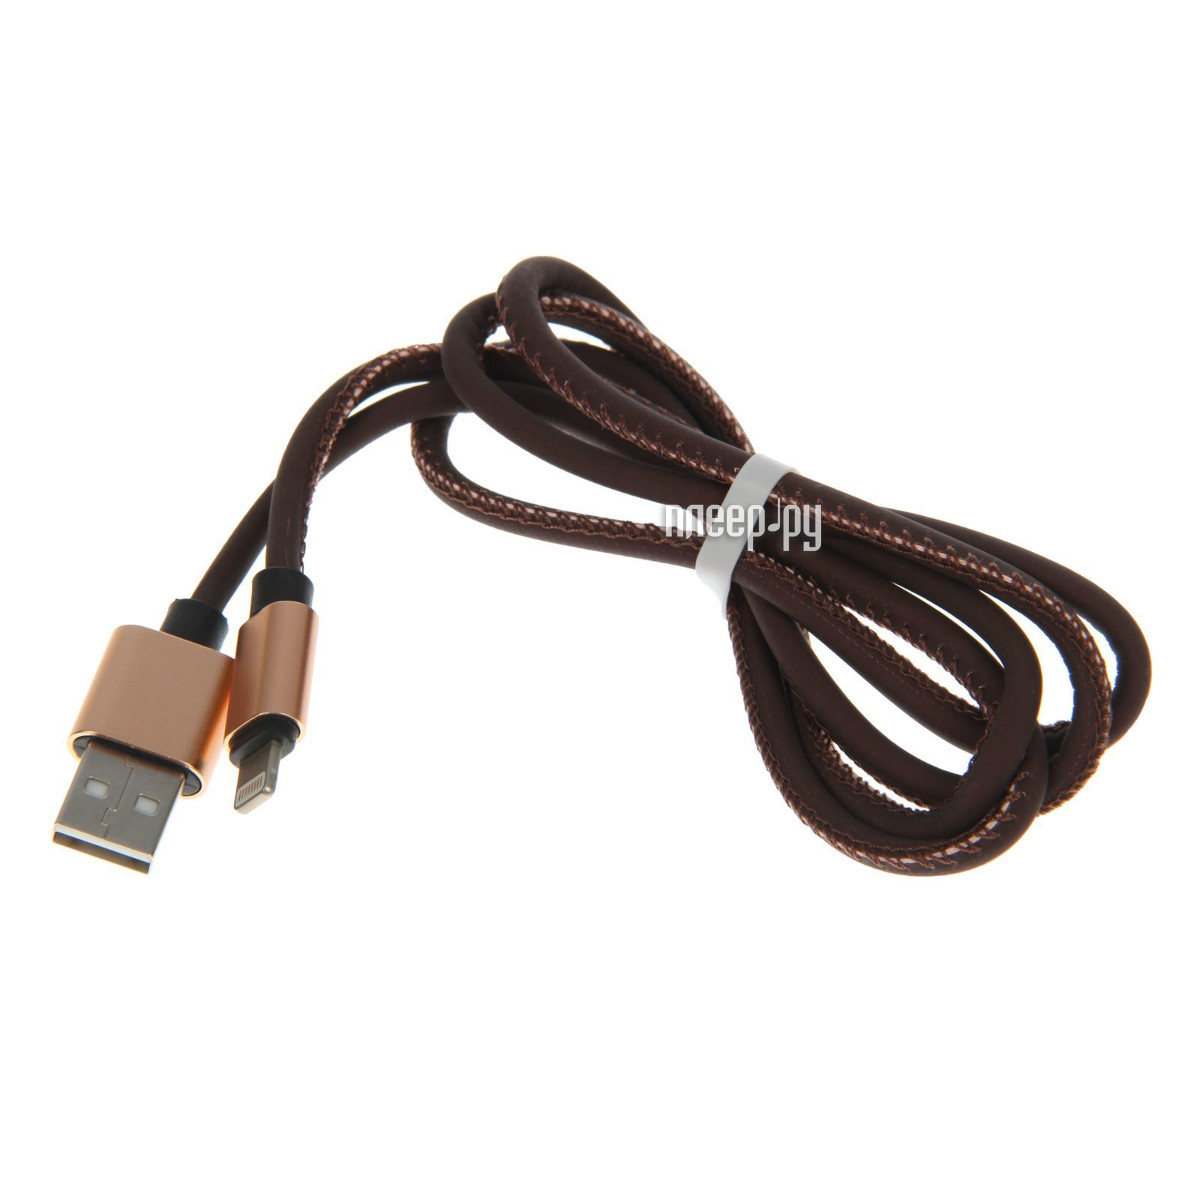  Luazon USB - Lightning Black-Orange 2541705  372 